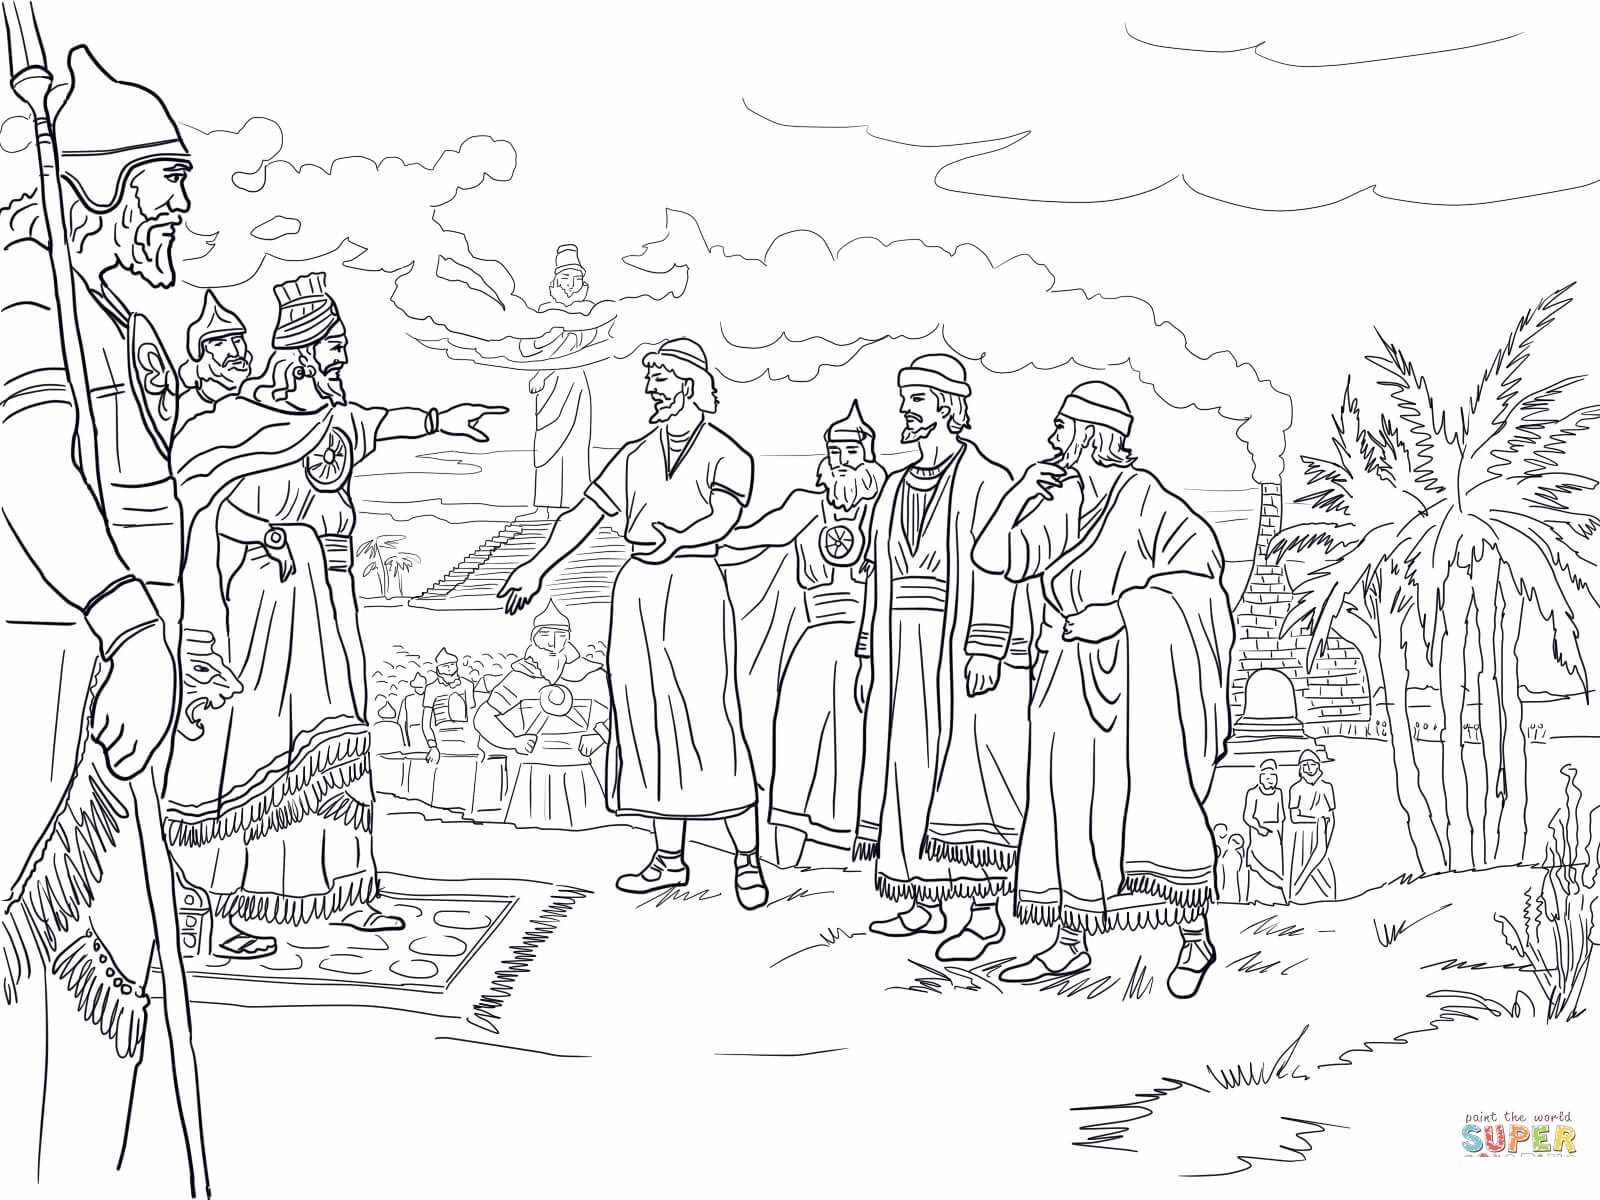 राजा नबूकदनेस्सर से पहले शद्रक, मेशक और अबेदनगो